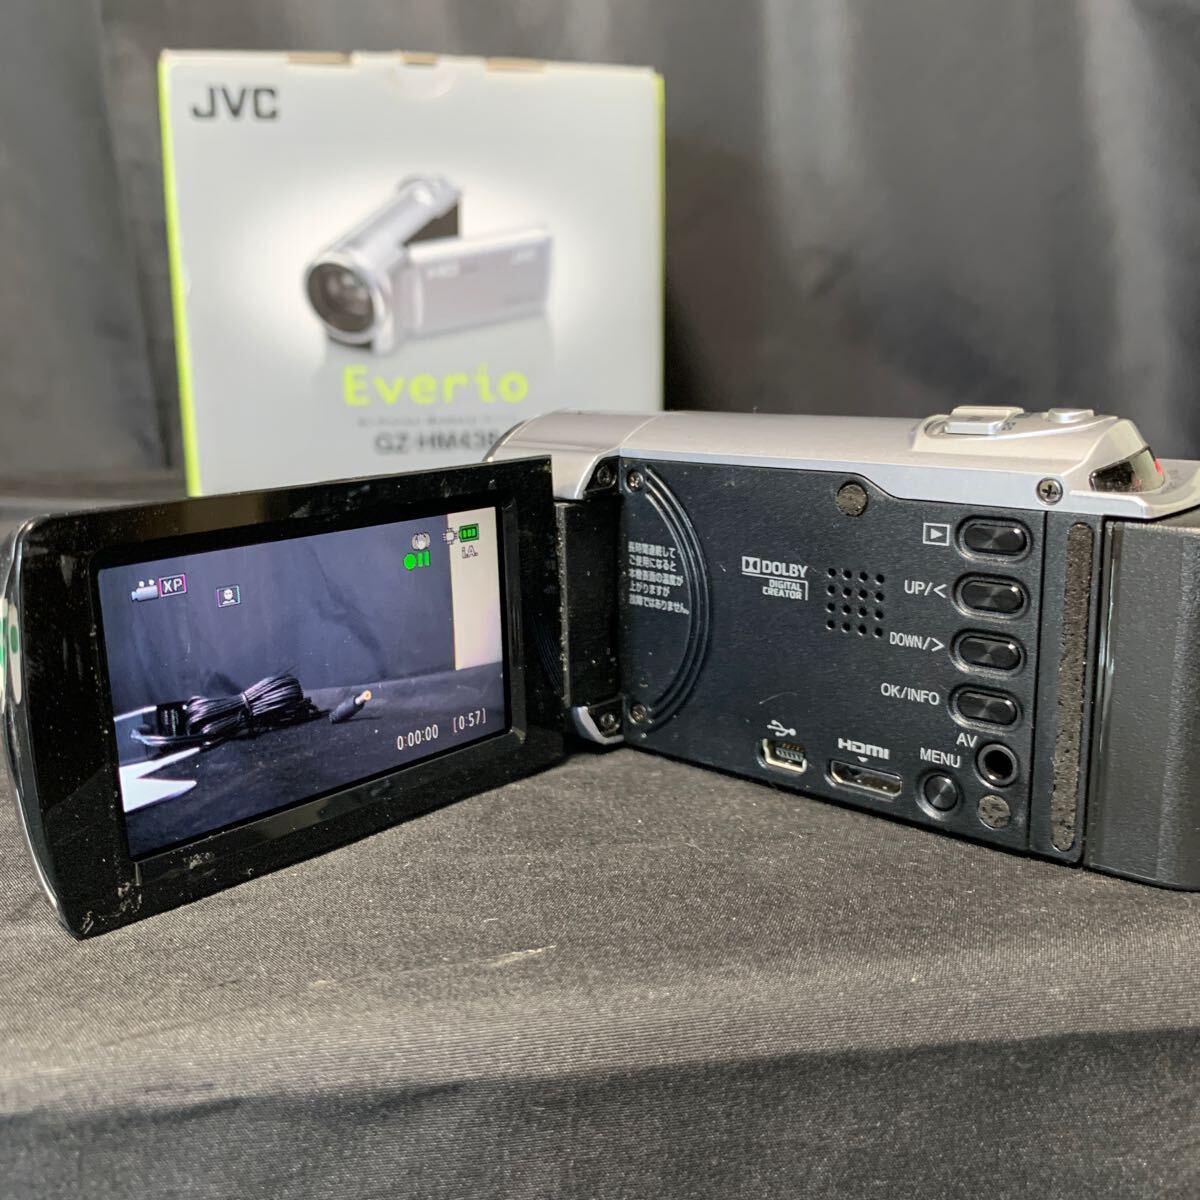 JVC Everio ハイビジョン メモリームービー GZ-HM438 -S シルバー バッテリー1個 充電器 説明書 箱付 動作確認済み ビデオカメラ エブリオ _画像4